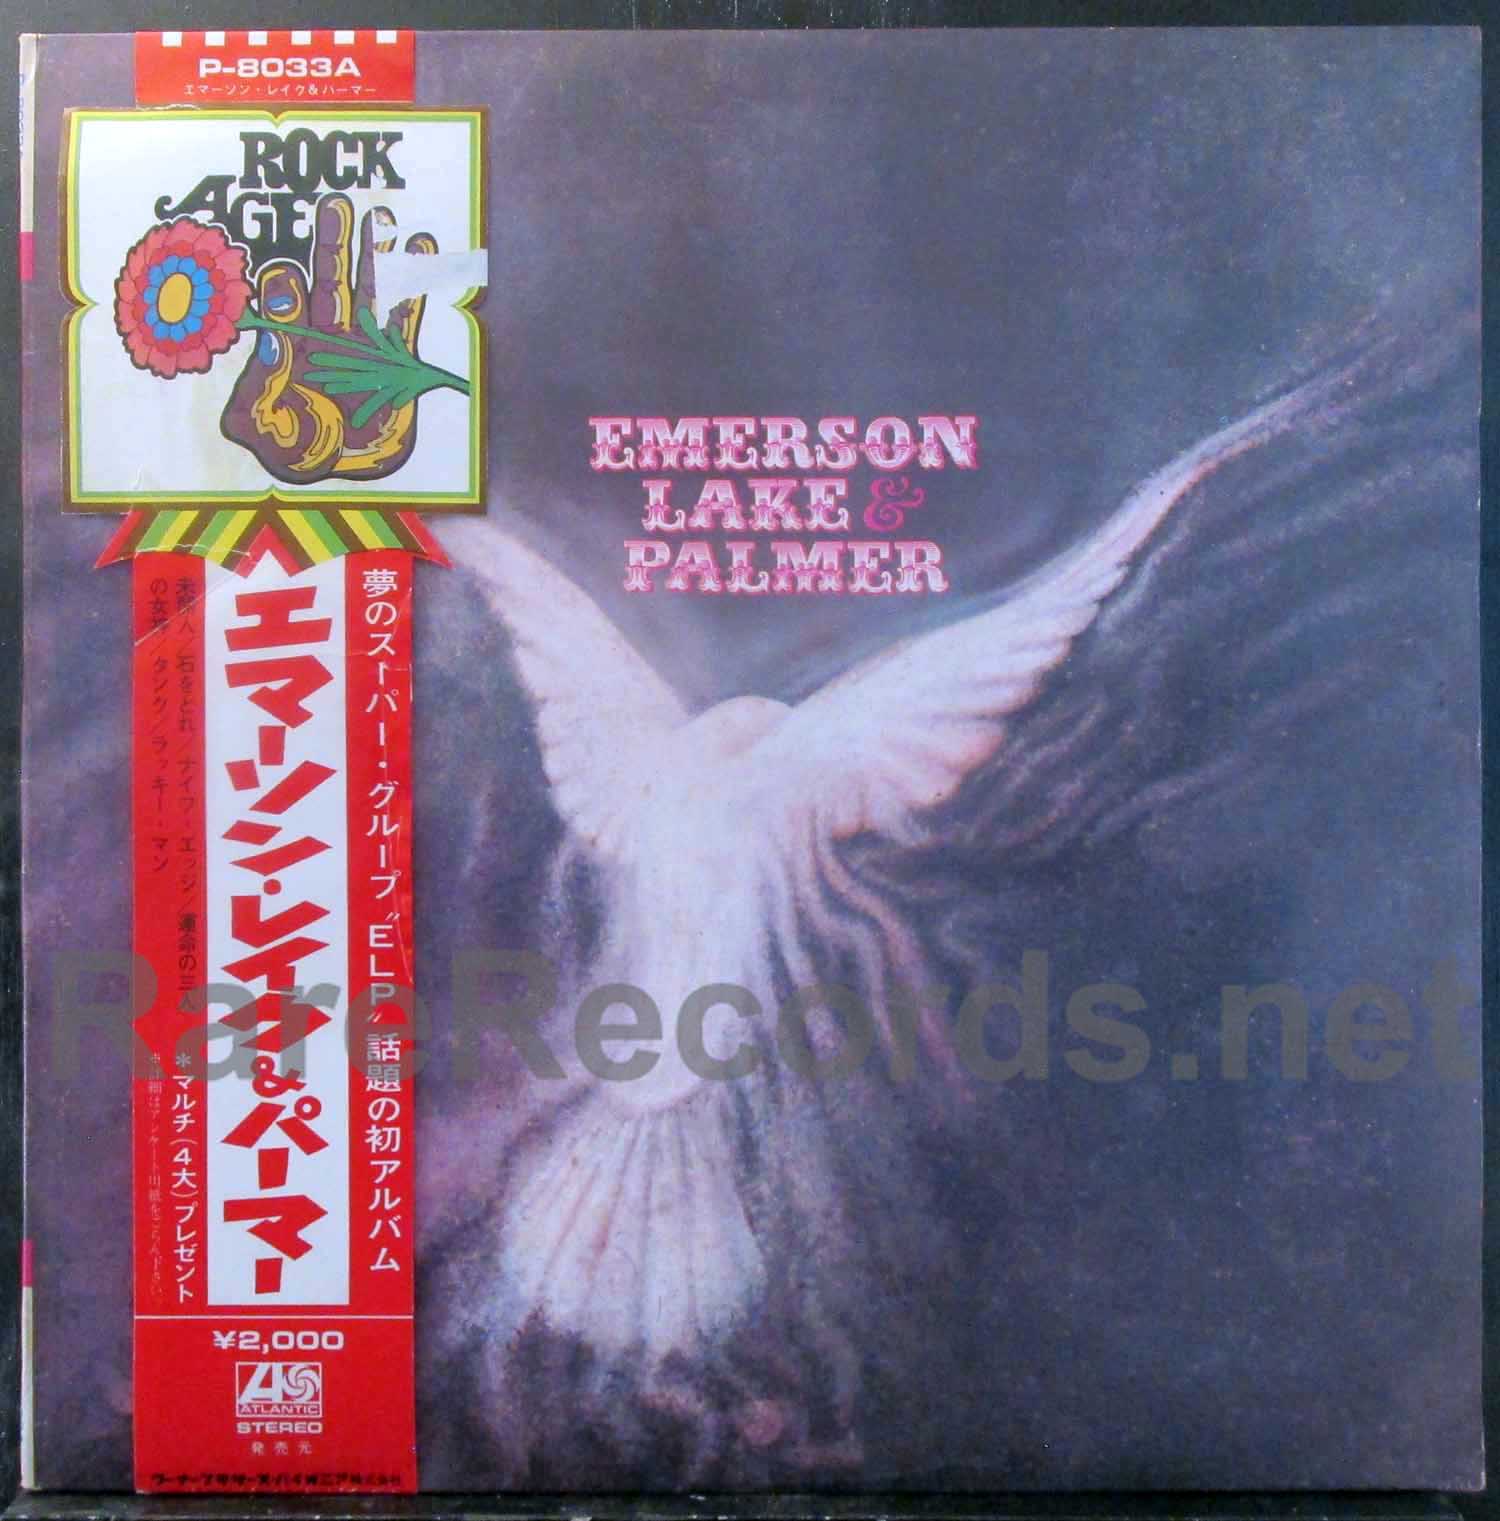 Emerson, Lake & Palmer - Emerson, Lake & Palmer Japan LP rock age